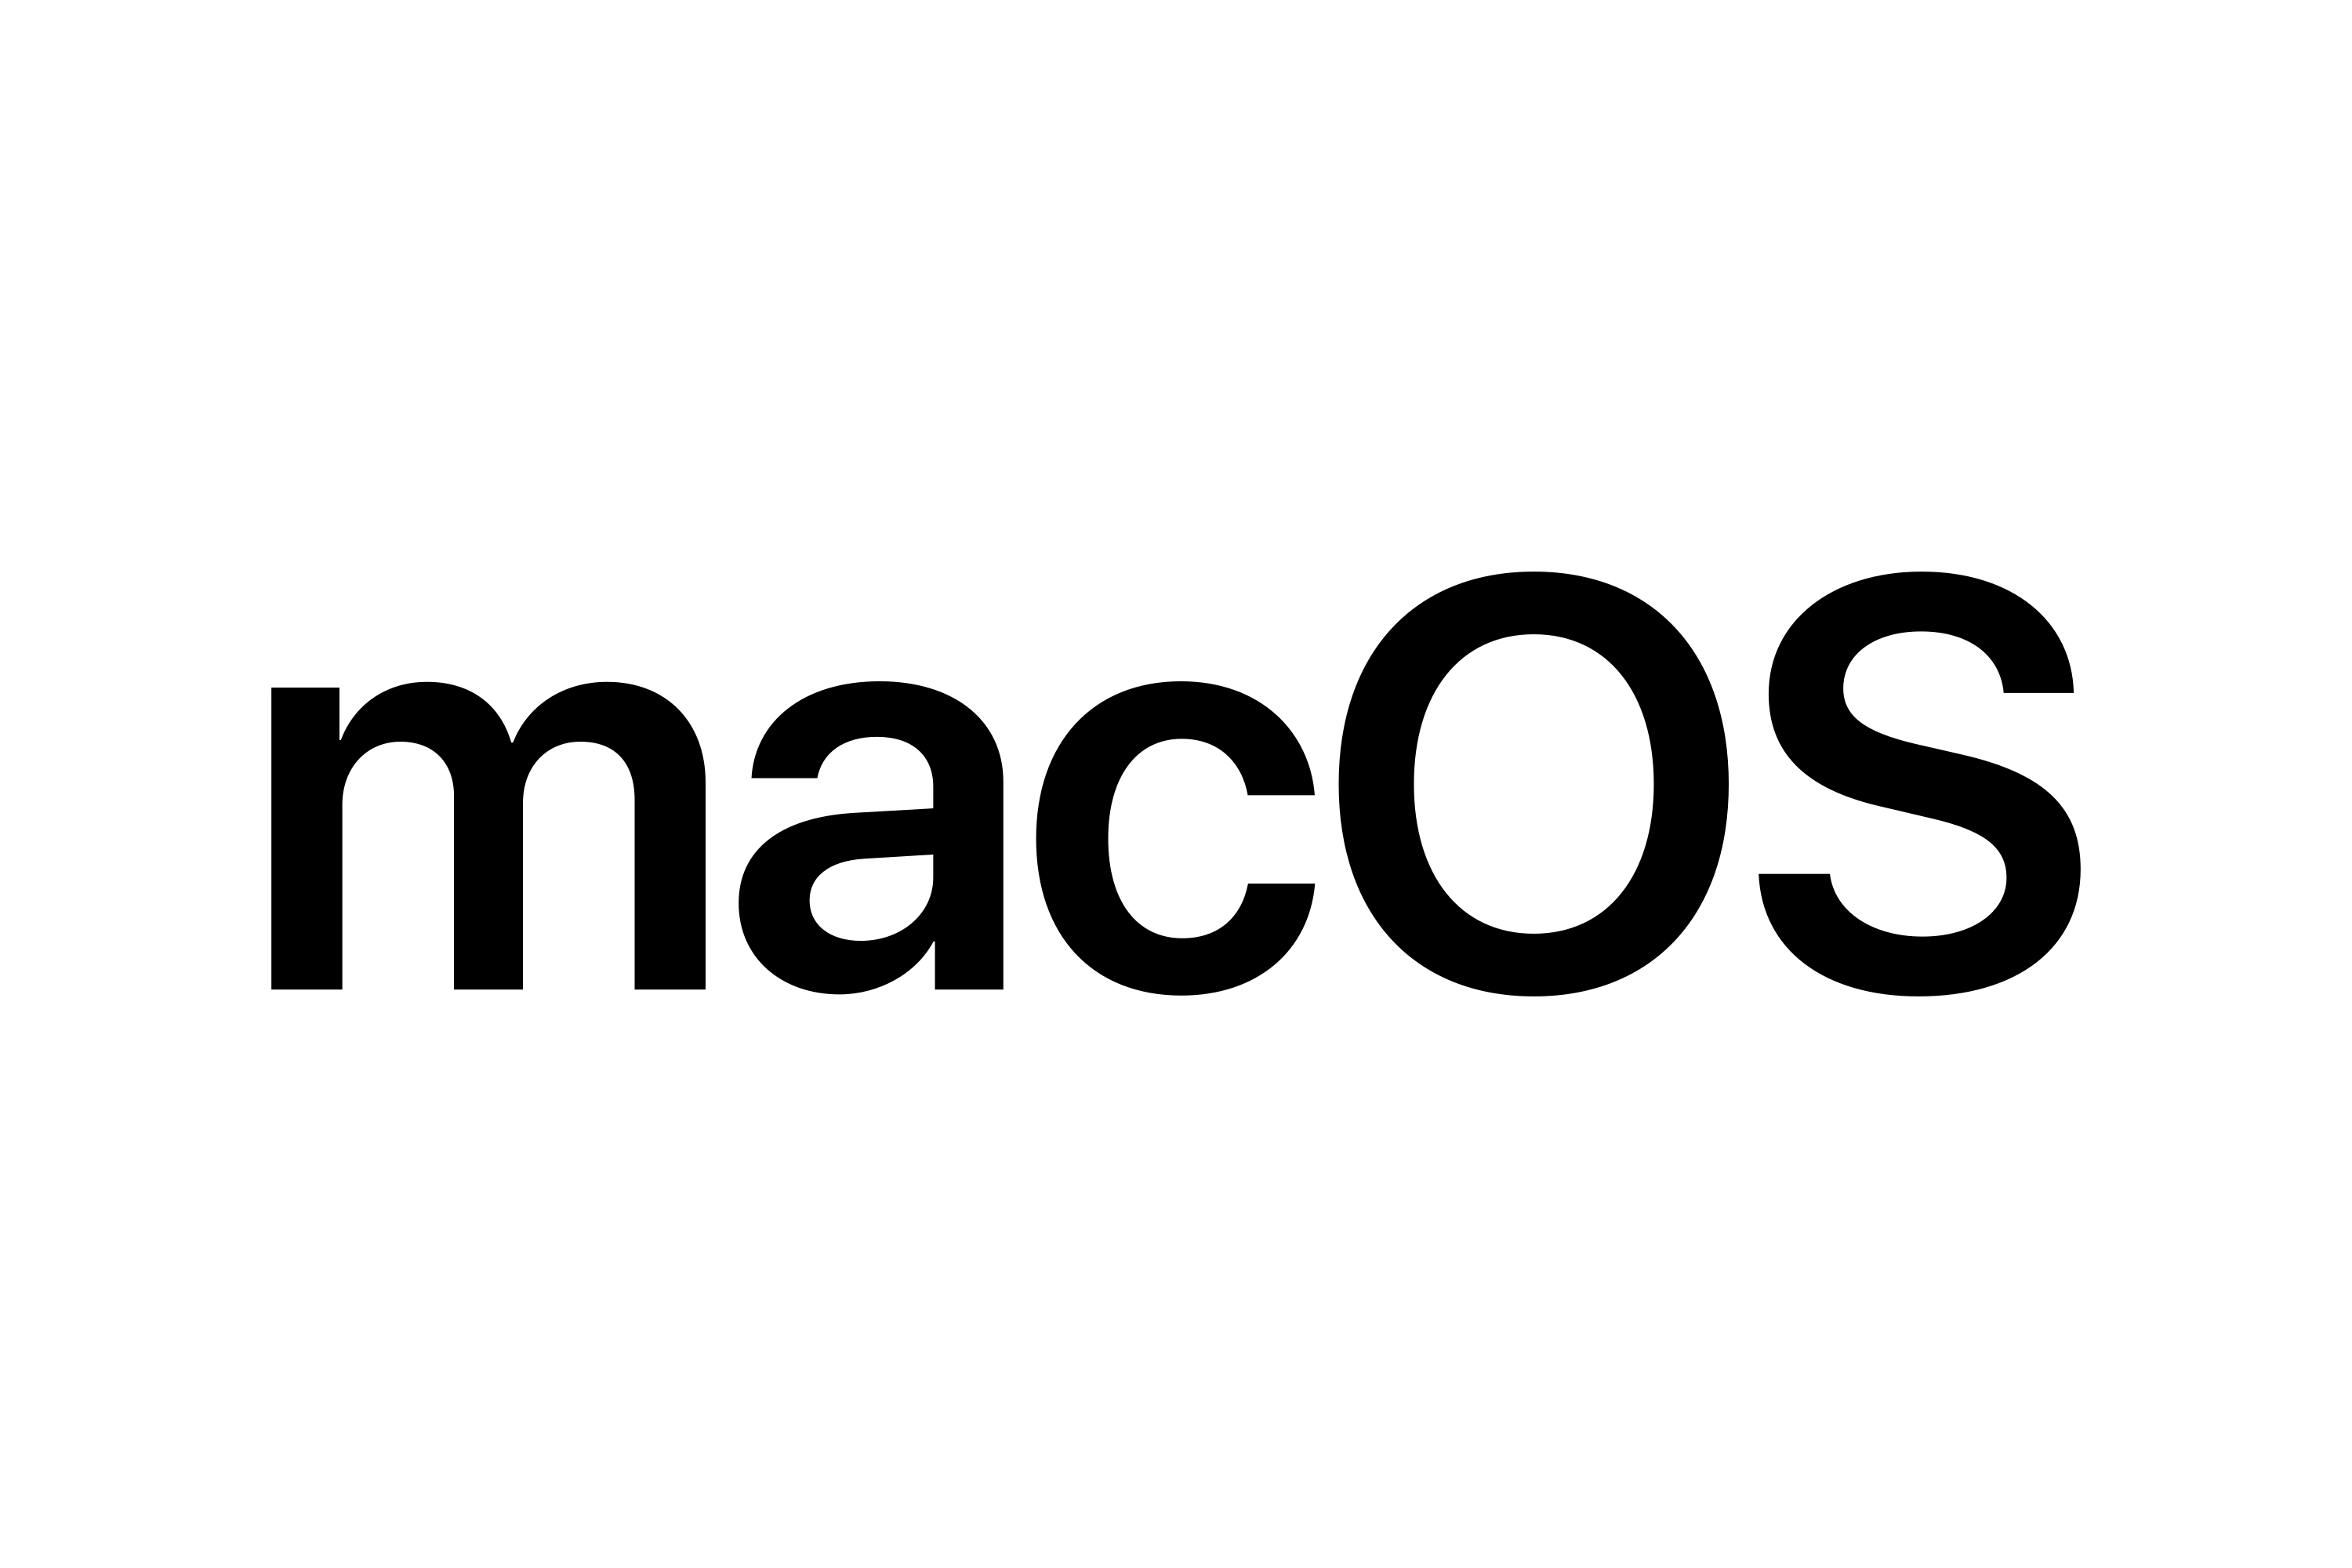 Download macOS Logo in SVG Vector or PNG File Format Logo.wine